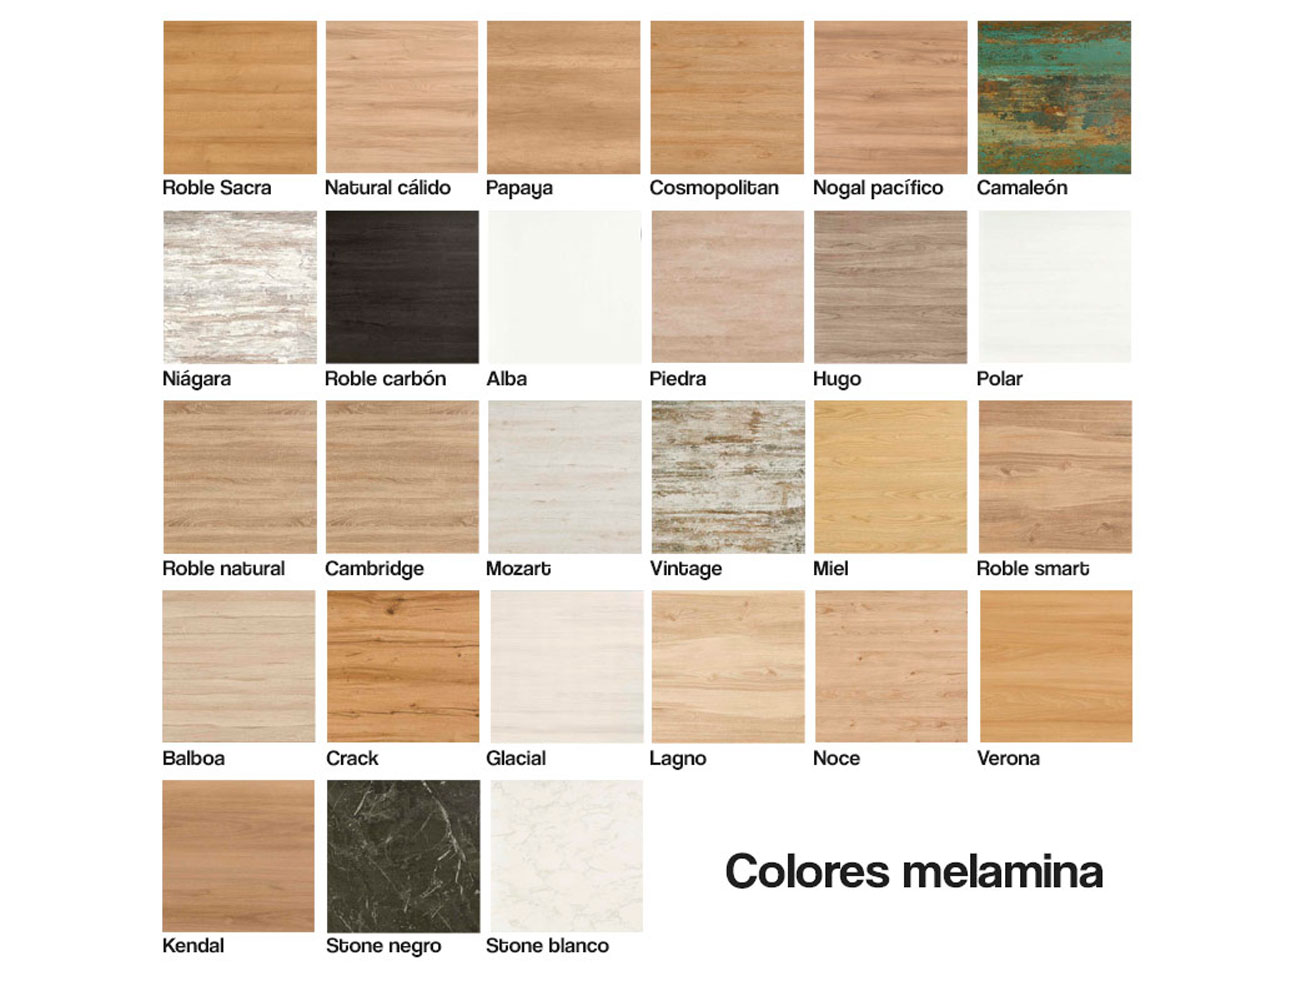 Colores melamina